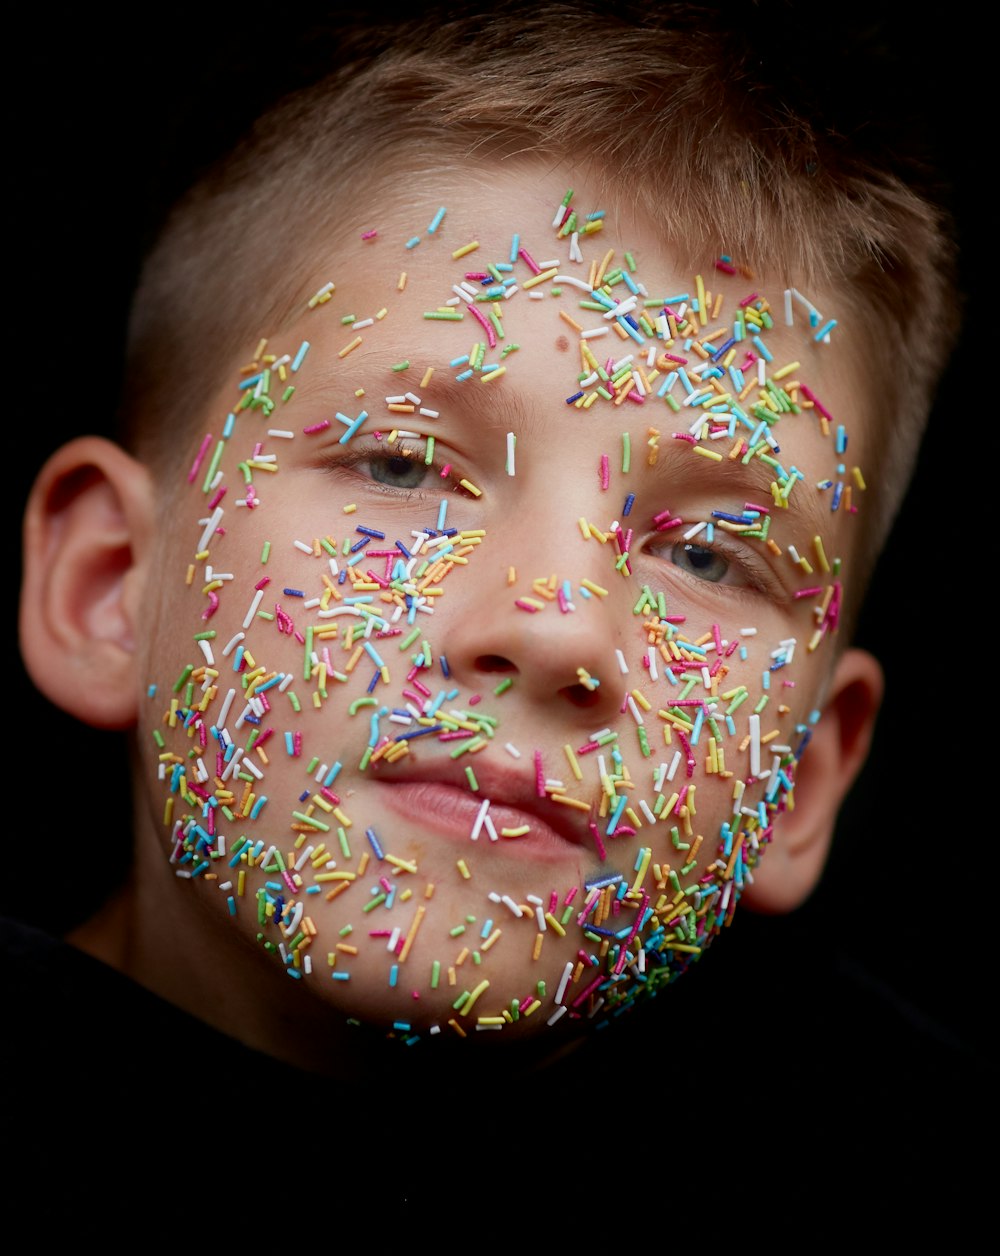 assorted-color sprinkler candies on boy's face